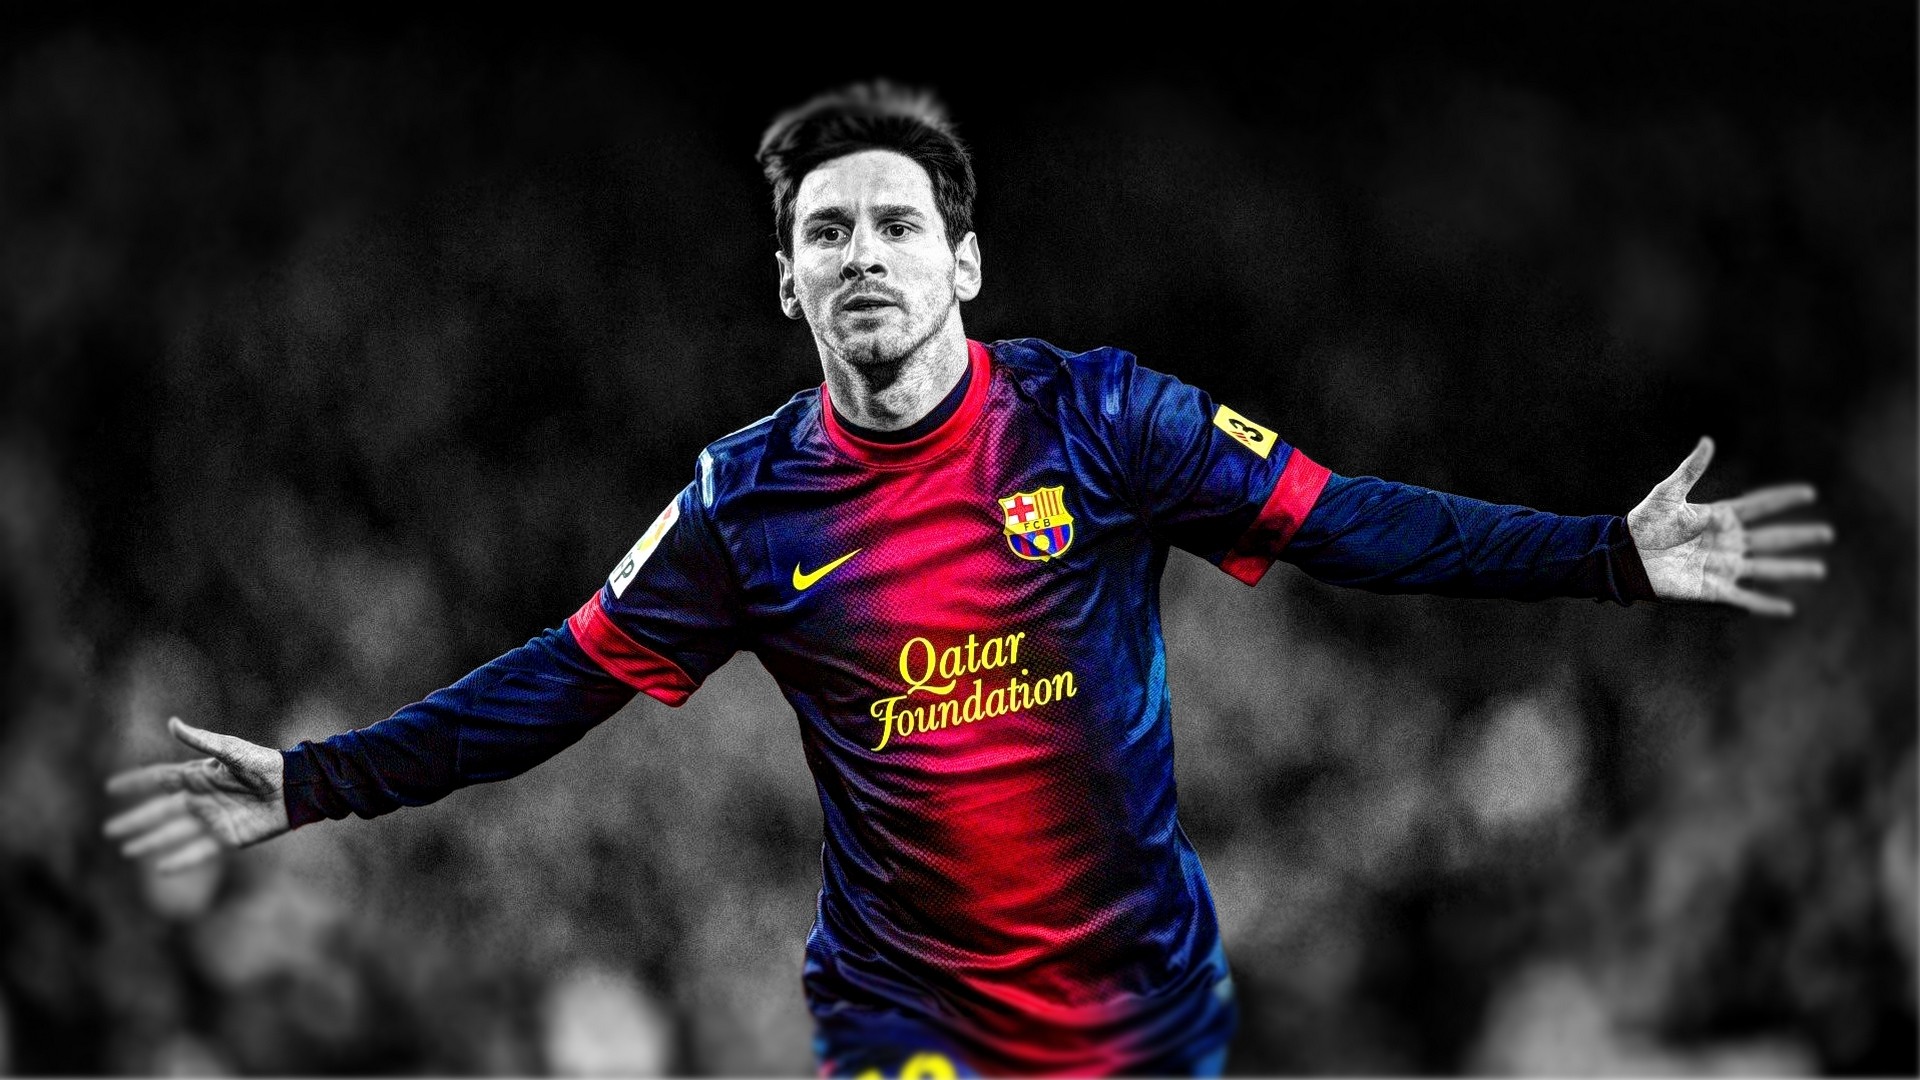 Bức hình nền Lionel Messi HD cao cấp này cung cấp cho bạn một góc nhìn hoàn hảo về ngôi sao bóng đá hàng đầu này. Bức ảnh đầy niềm vui trong khung hình chỉ có một mình Messi - đó là điều nên xem.